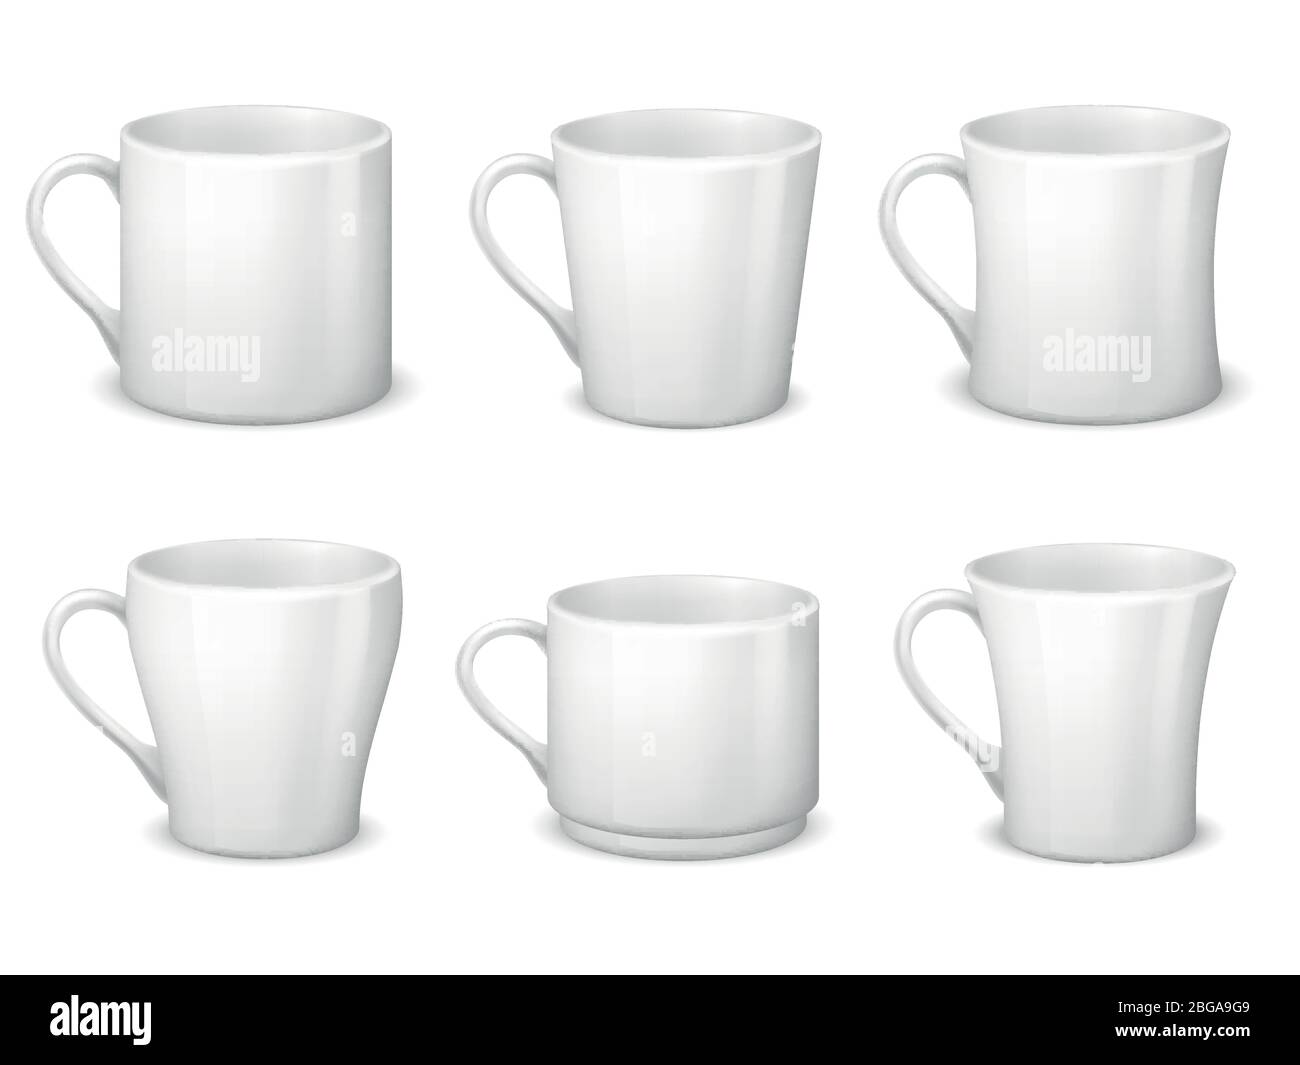 Realistische leere weiße Kaffeetassen mit Griff und Porzellan Tassen Vektor Vorlage isoliert. Tasse Porzellan für Tee und Kaffee Frühstück, realistische Teetasse Illustration Stock Vektor